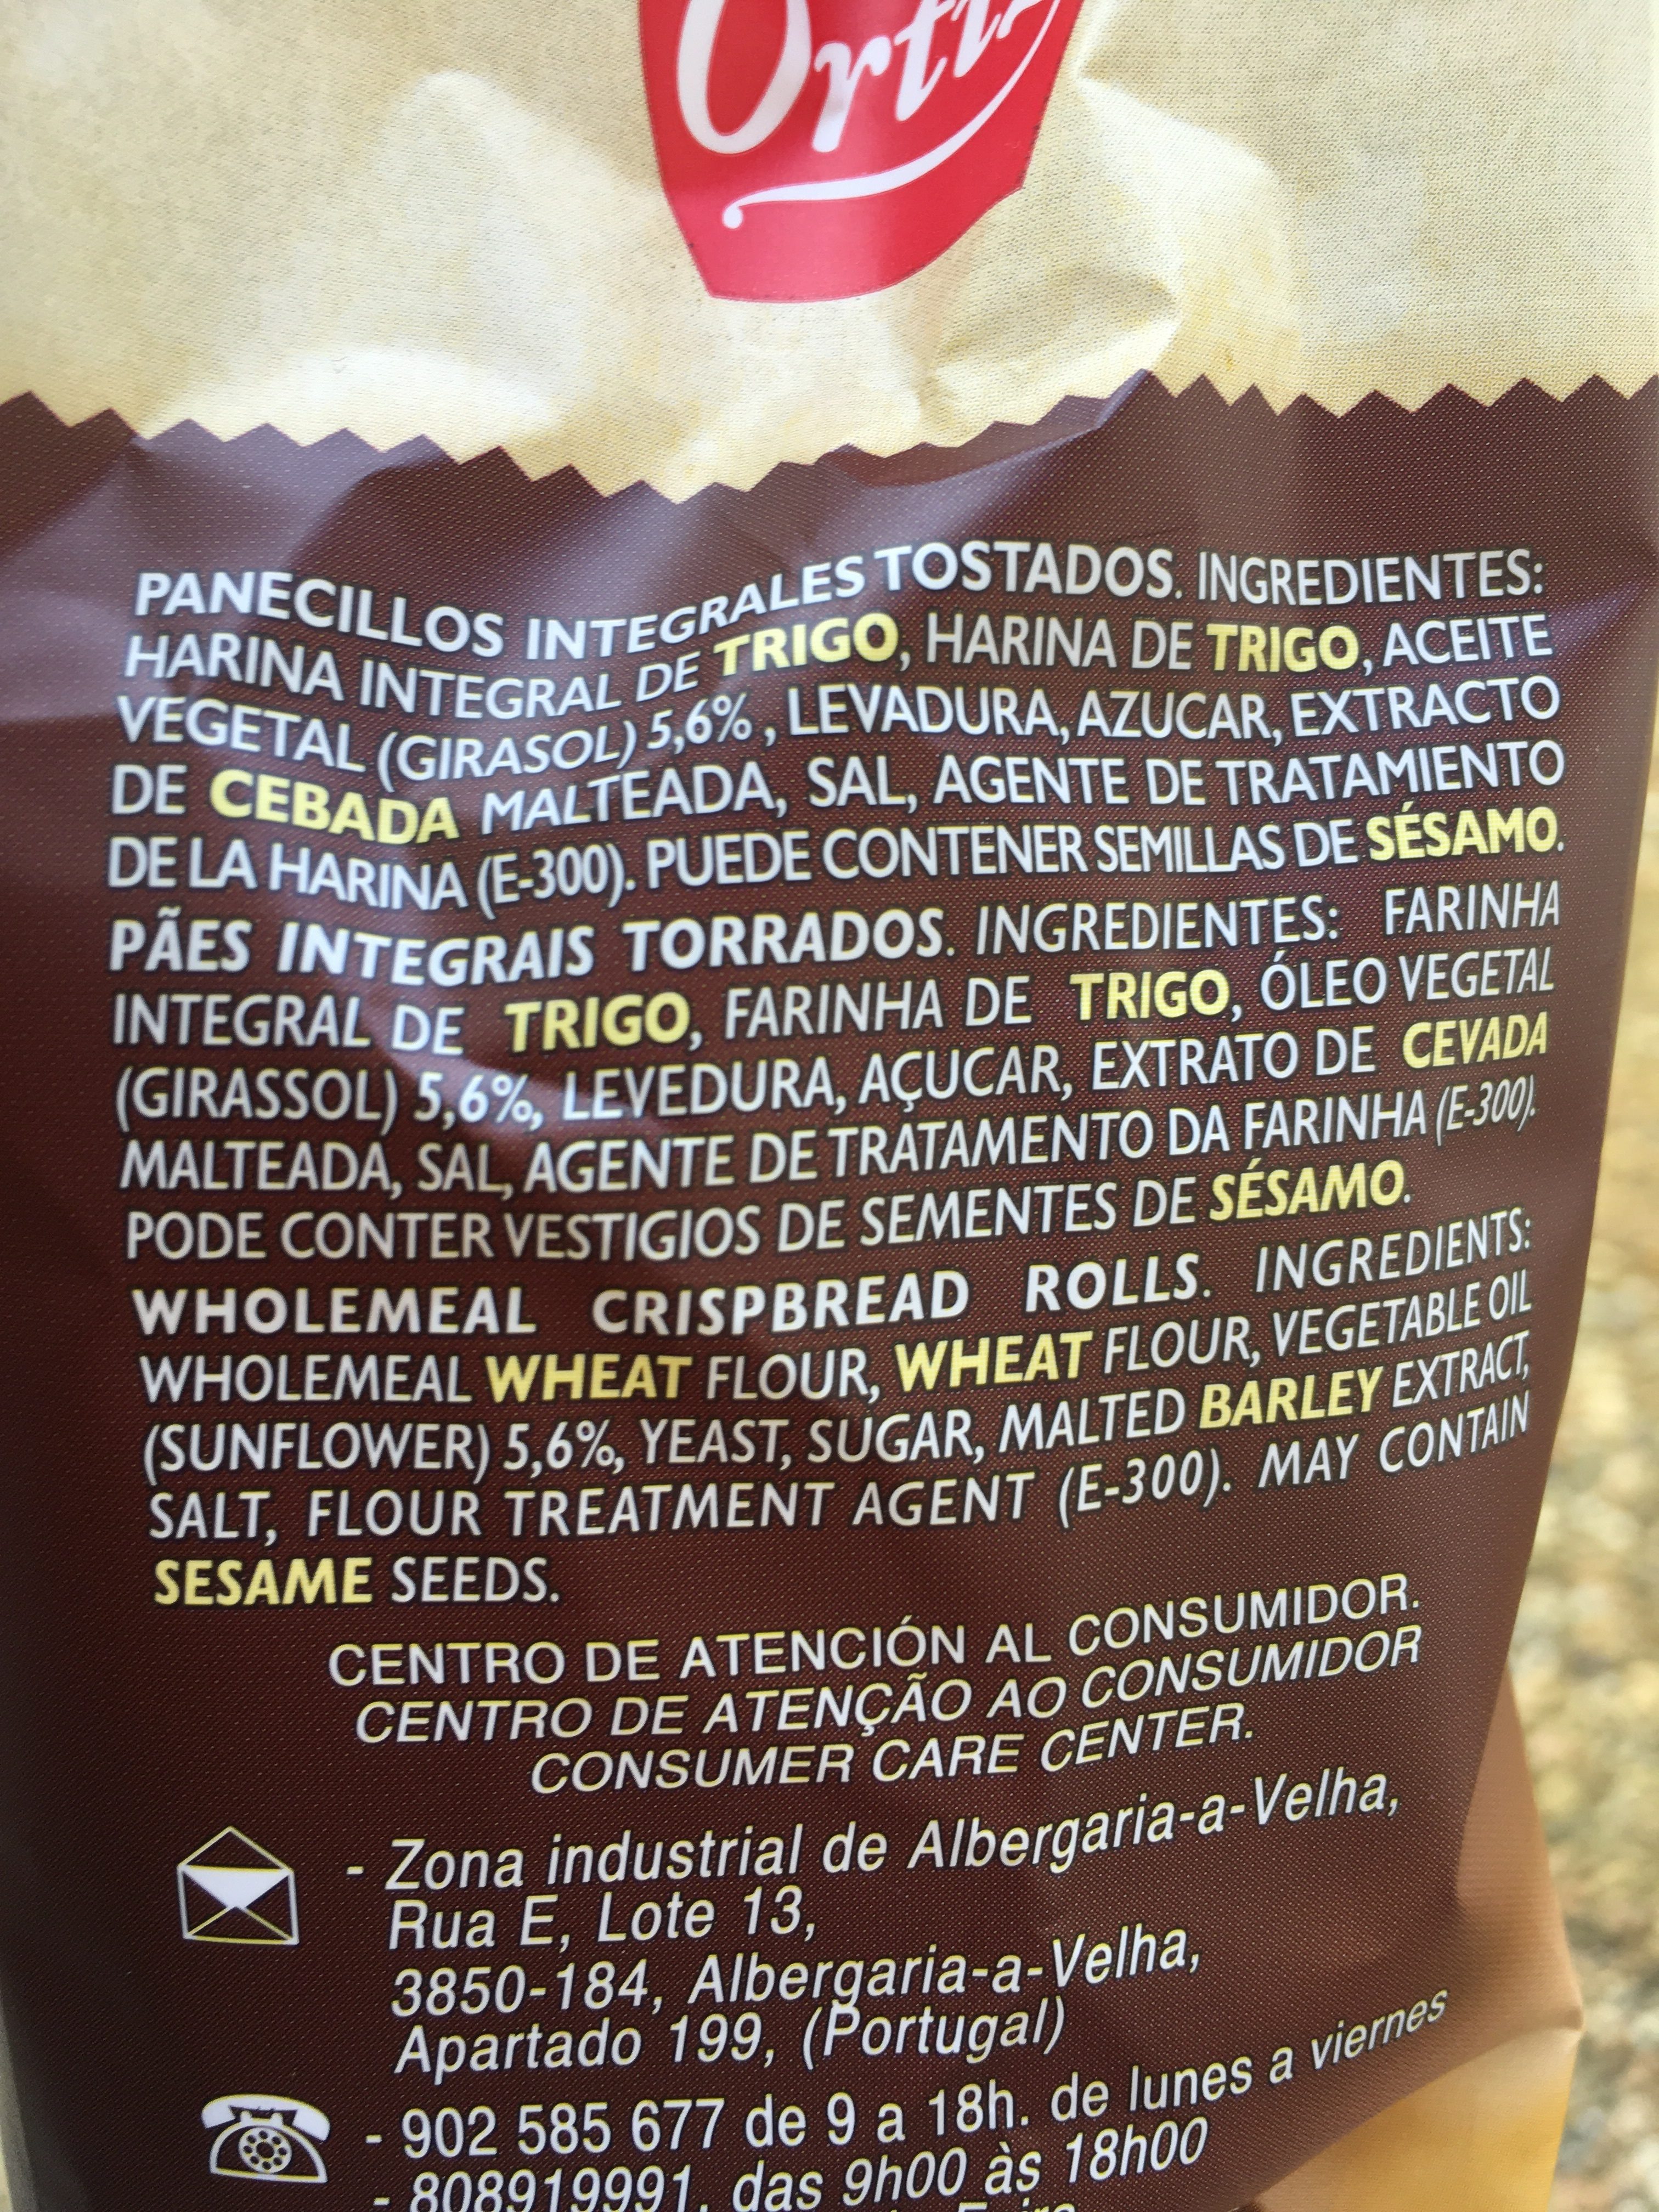 Panecillos 100 integral - Ingredients - en